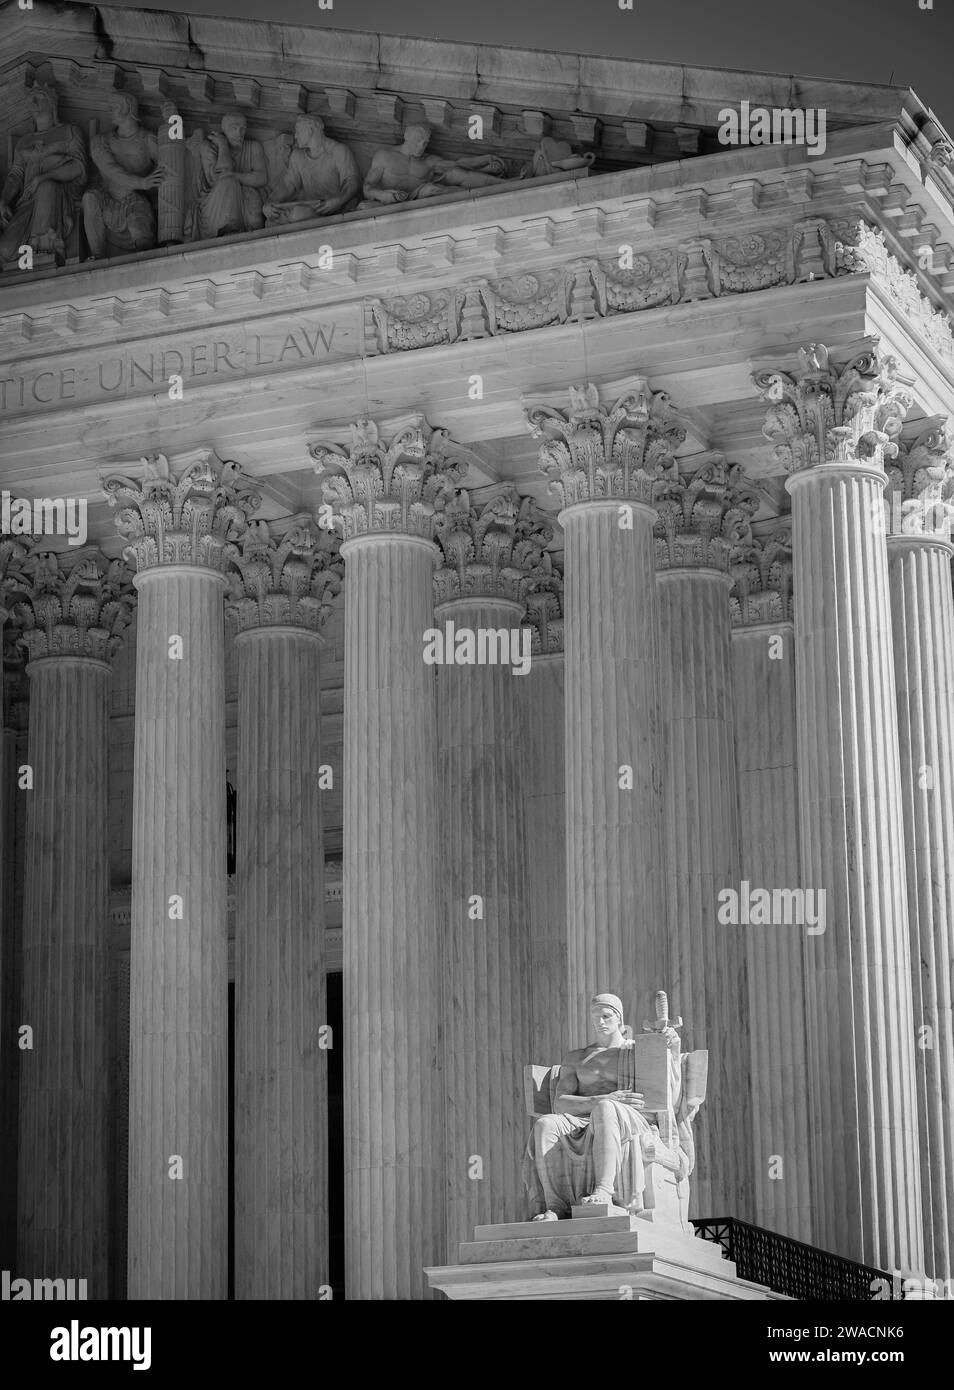 Un gros plan spectaculaire de la statue en marbre assise "Guardian" au premier plan de l'architecture néoclassique de la Cour suprême des États-Unis, Washington DC Banque D'Images